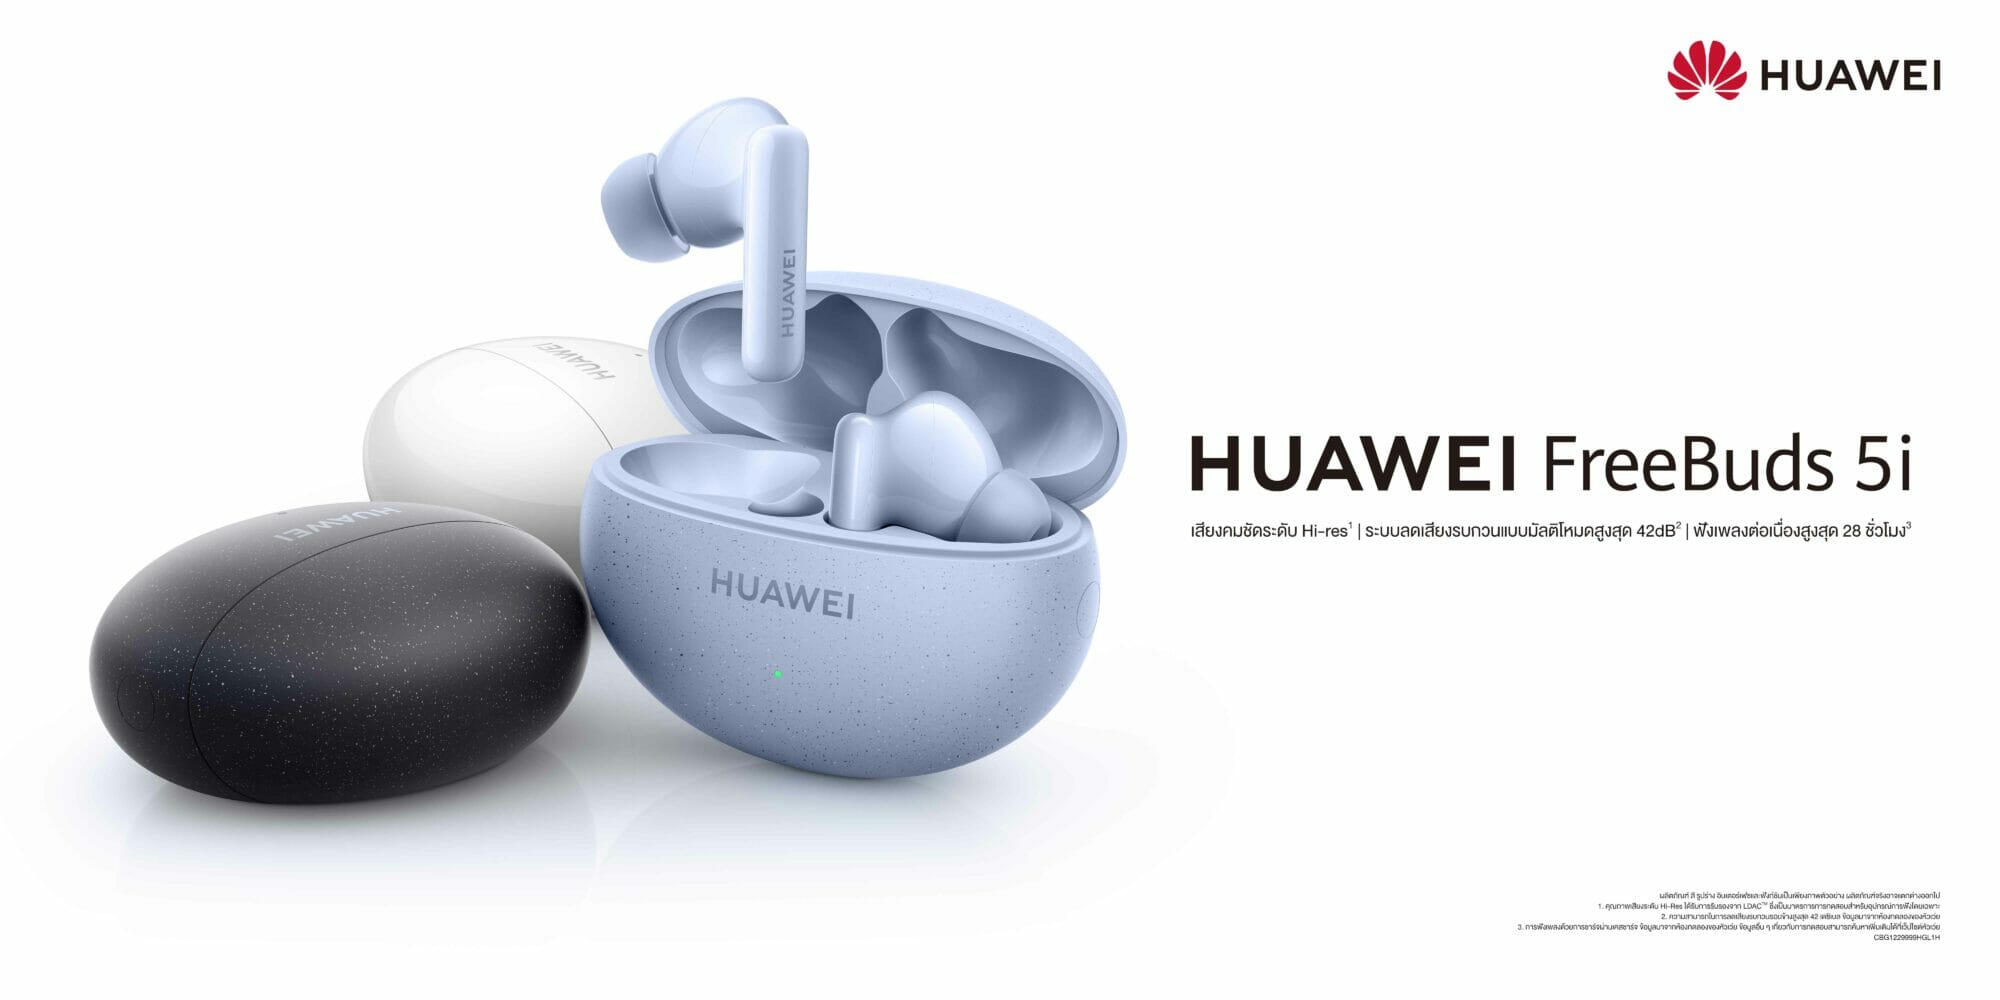 หัวเว่ยจ่อเปิดตัว HUAWEI FreeBuds 5i ตีตลาดหูฟังกับคุณภาพเสียงระดับ Hi-res เพียง 2,799 บาท 1